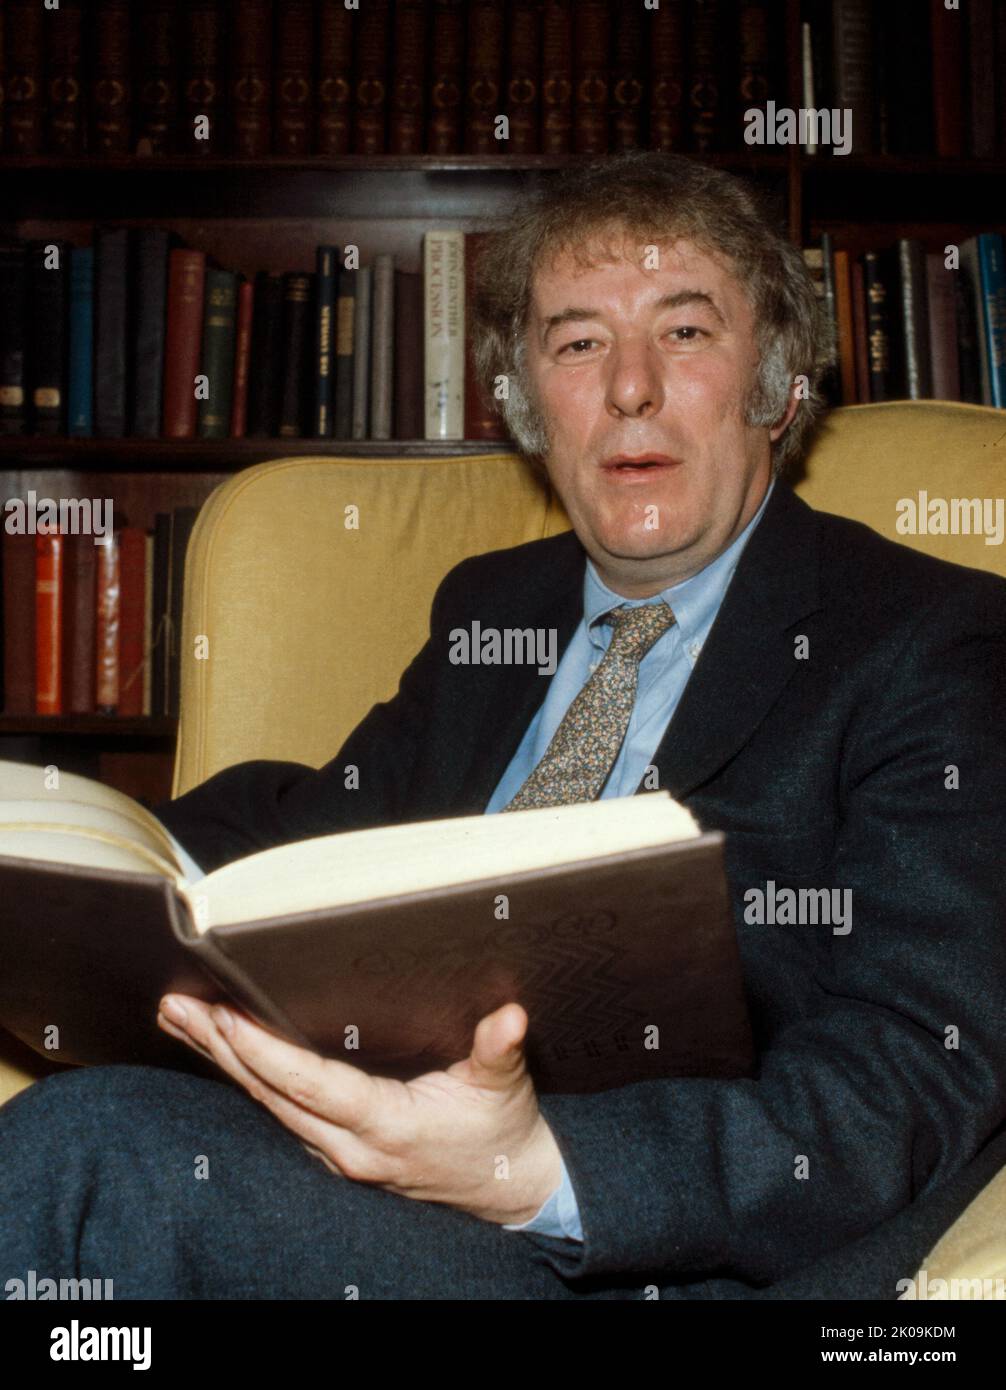 Seamus Heaney (1939 - 2013) poeta, drammaturgo e traduttore irlandese. Ha ricevuto il Premio Nobel per la letteratura nel 1995. Tra le sue opere più conosciute c'è Death of a Naturalist (1966), il suo primo grande volume pubblicato. Heaney è stato ed è ancora riconosciuto come uno dei principali contributori alla poesia in Irlanda durante la sua vita. Foto Stock